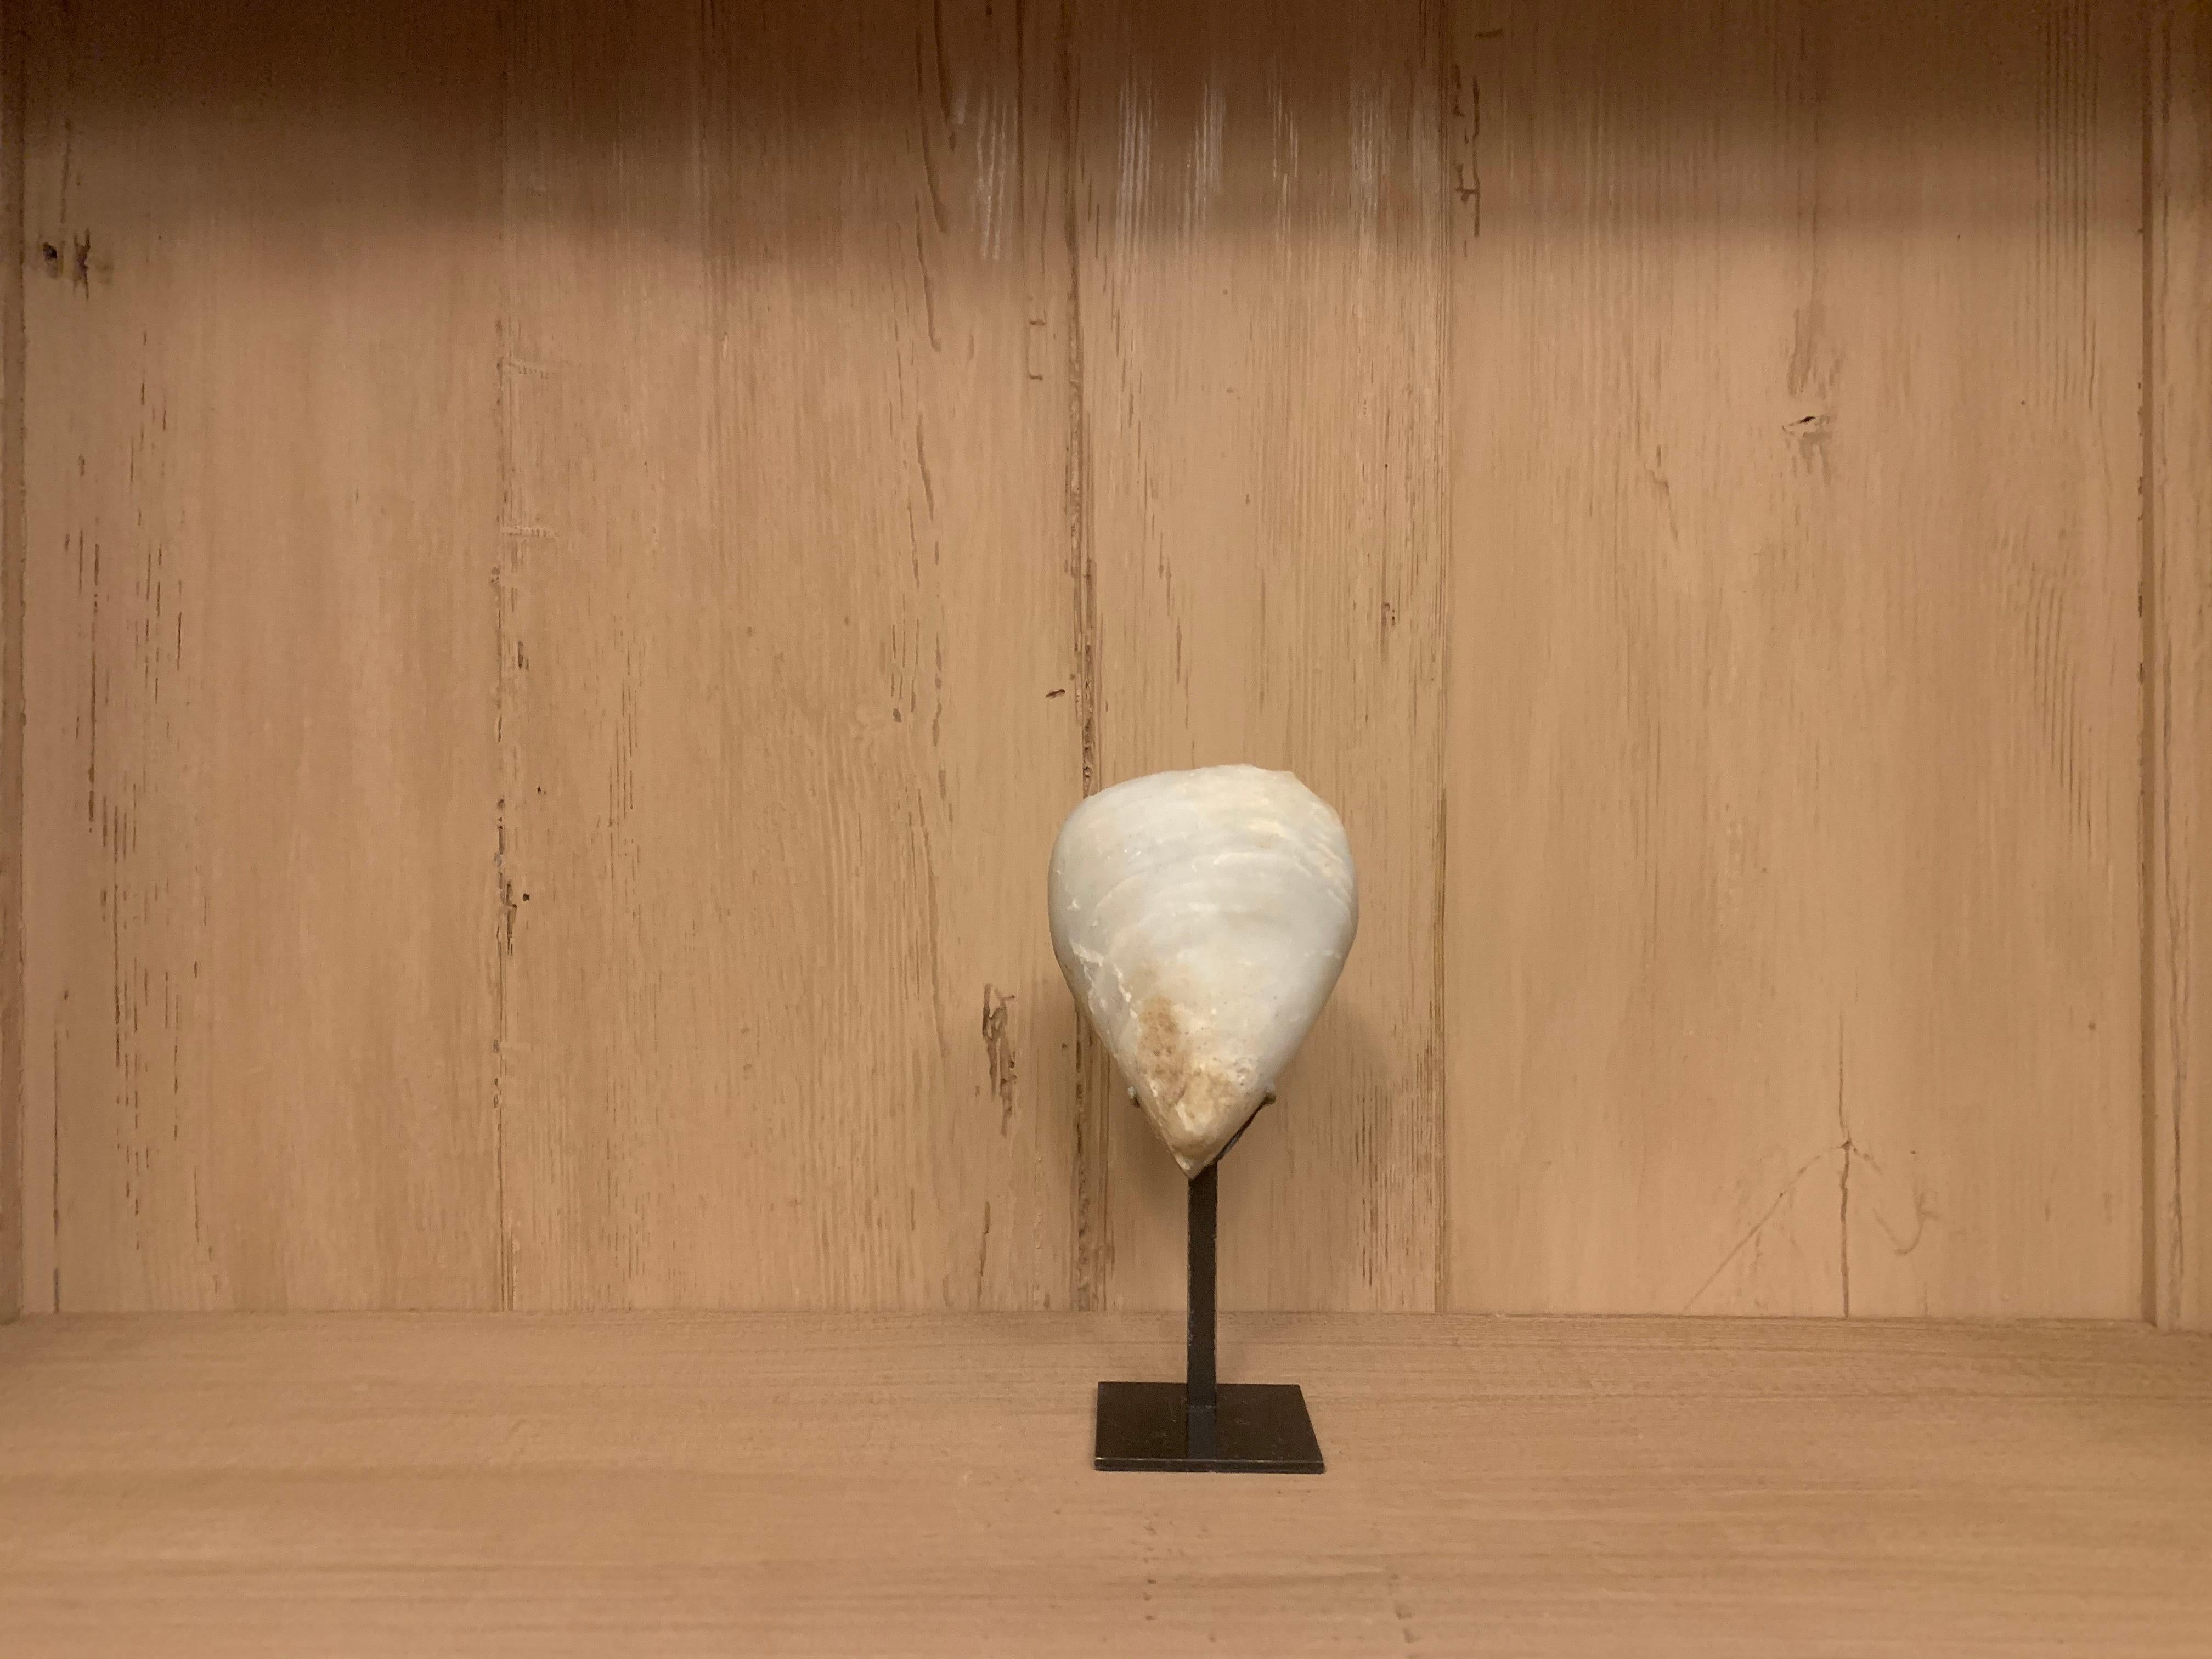 Ein kleiner, prähistorischer anatolischer Marmorkopf vom Typ Kiliya. Der Marmorkopf in stark stilisierter geometrischer Form ist elliptisch, mit einer schwach ausgeprägten Nase und erkennbaren sylphischen Ohren.
Ursprünglich aus einer stehenden